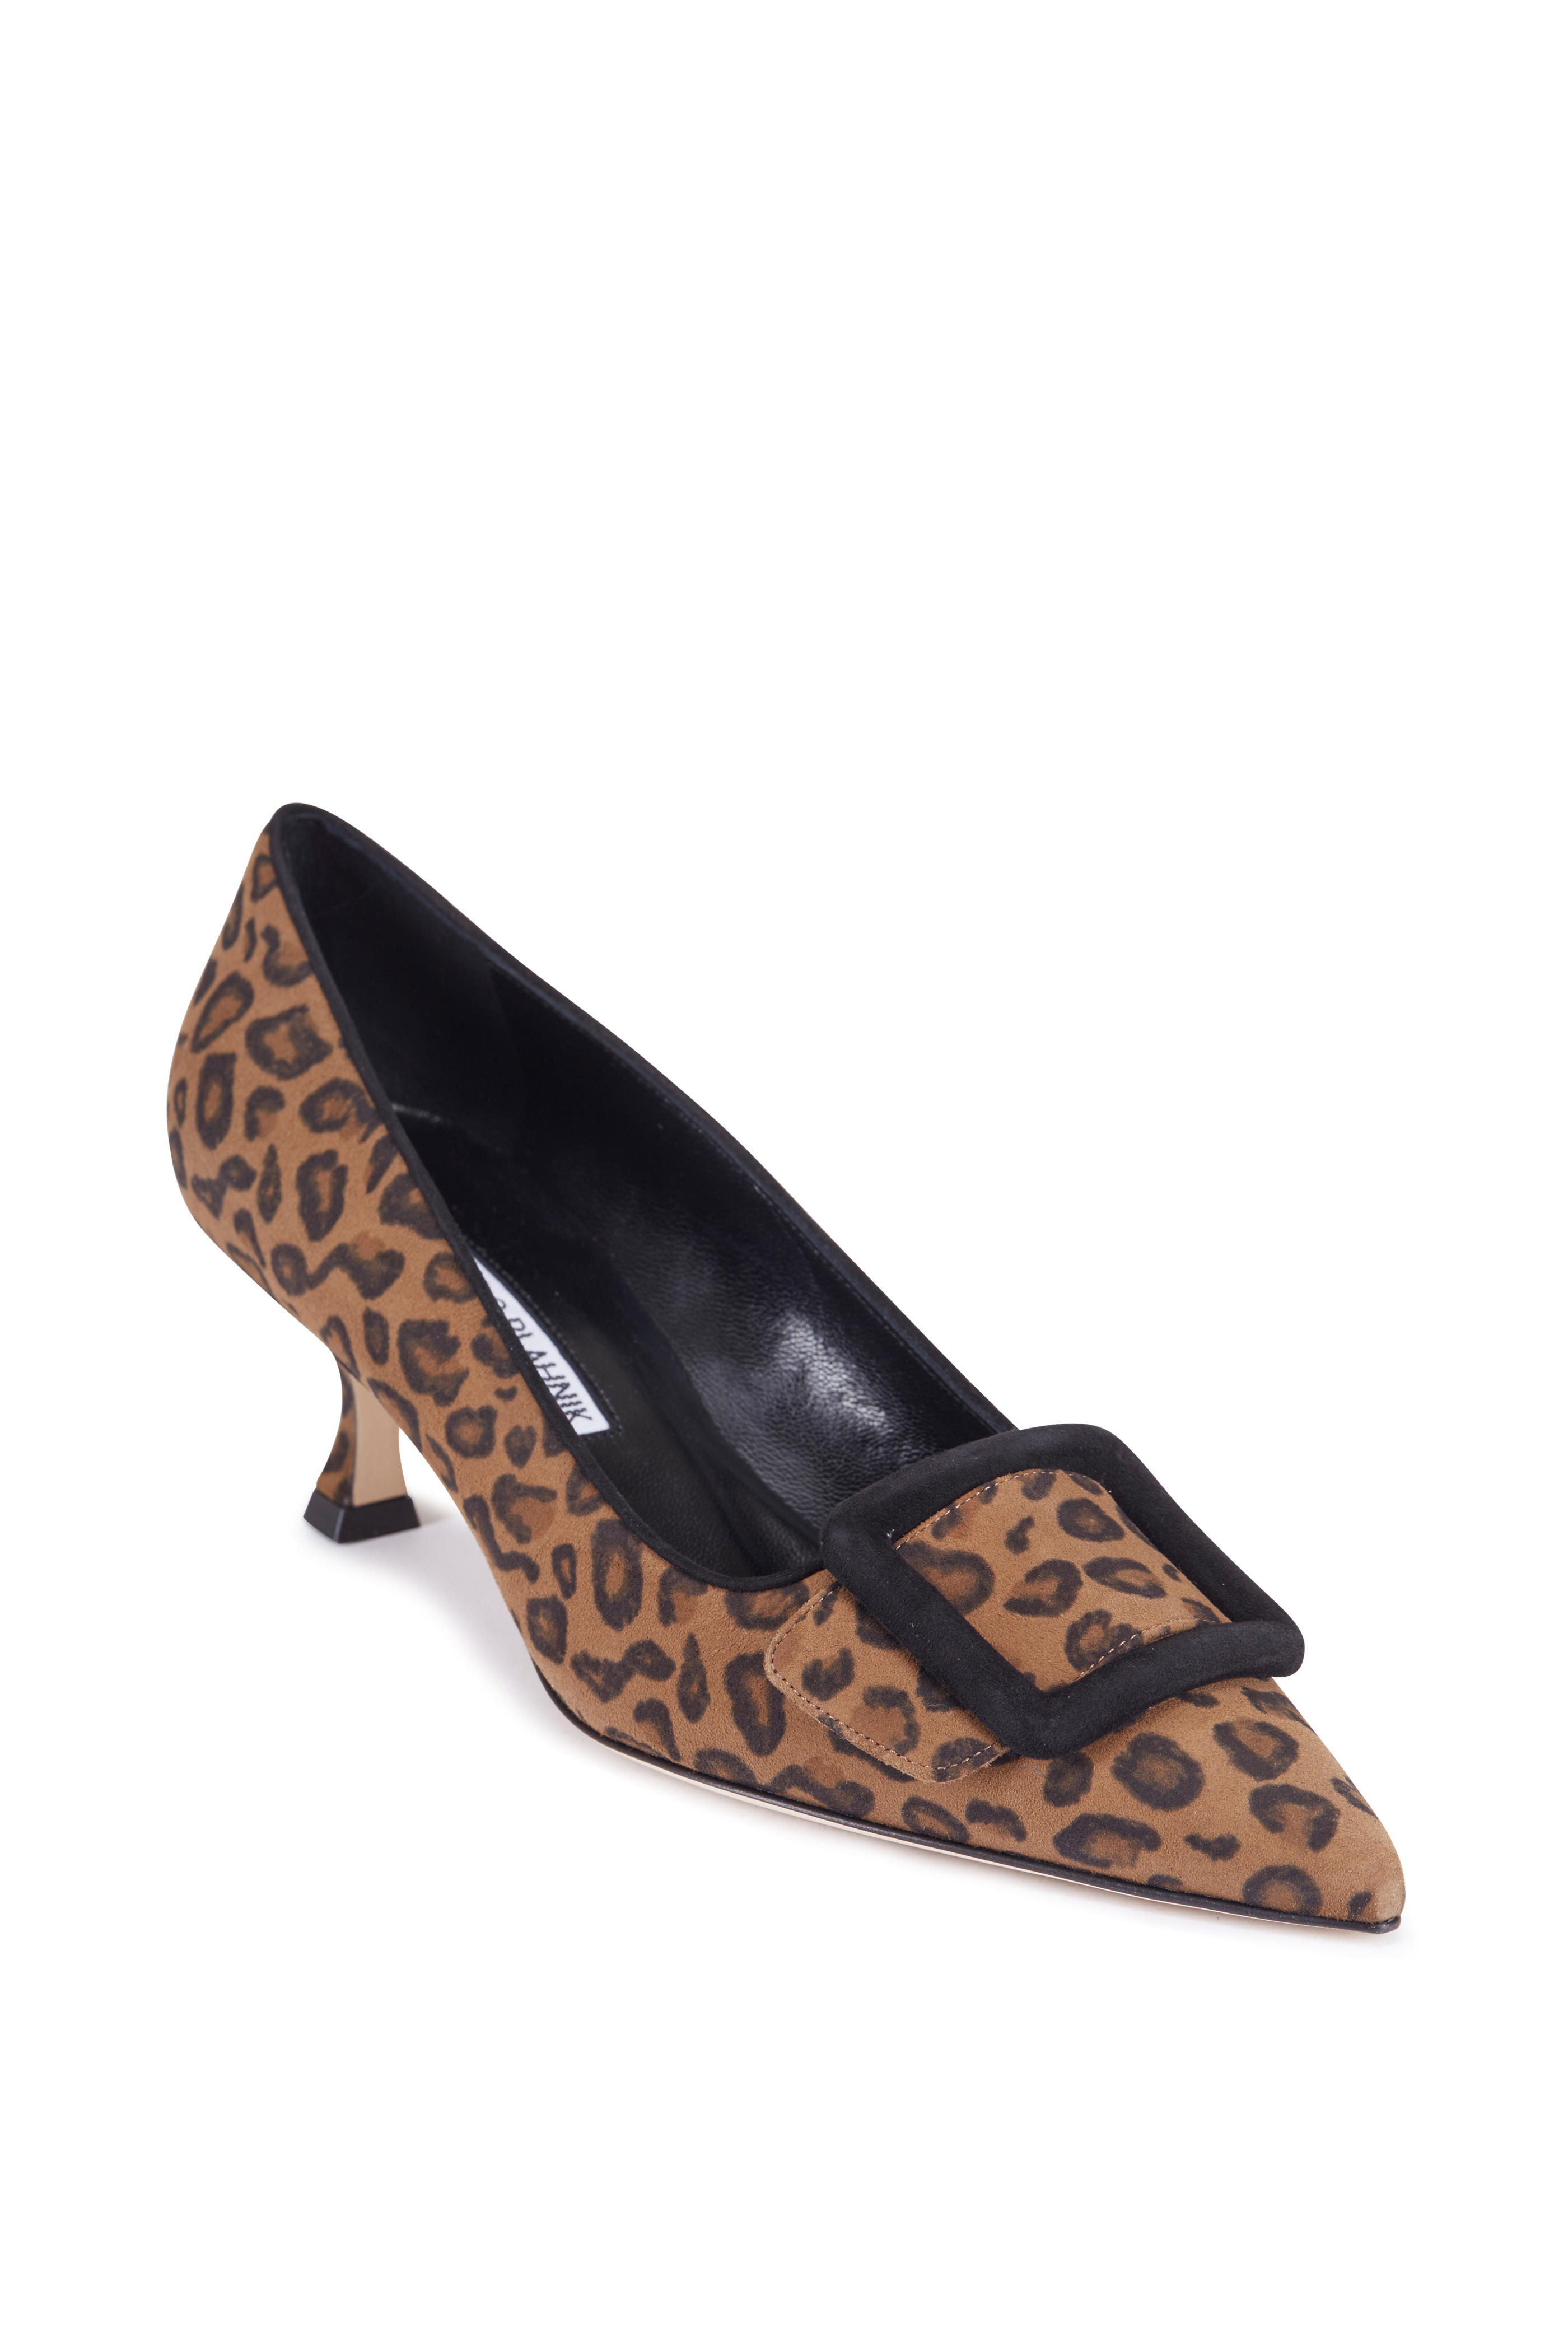 manolo blahnik leopard print shoes